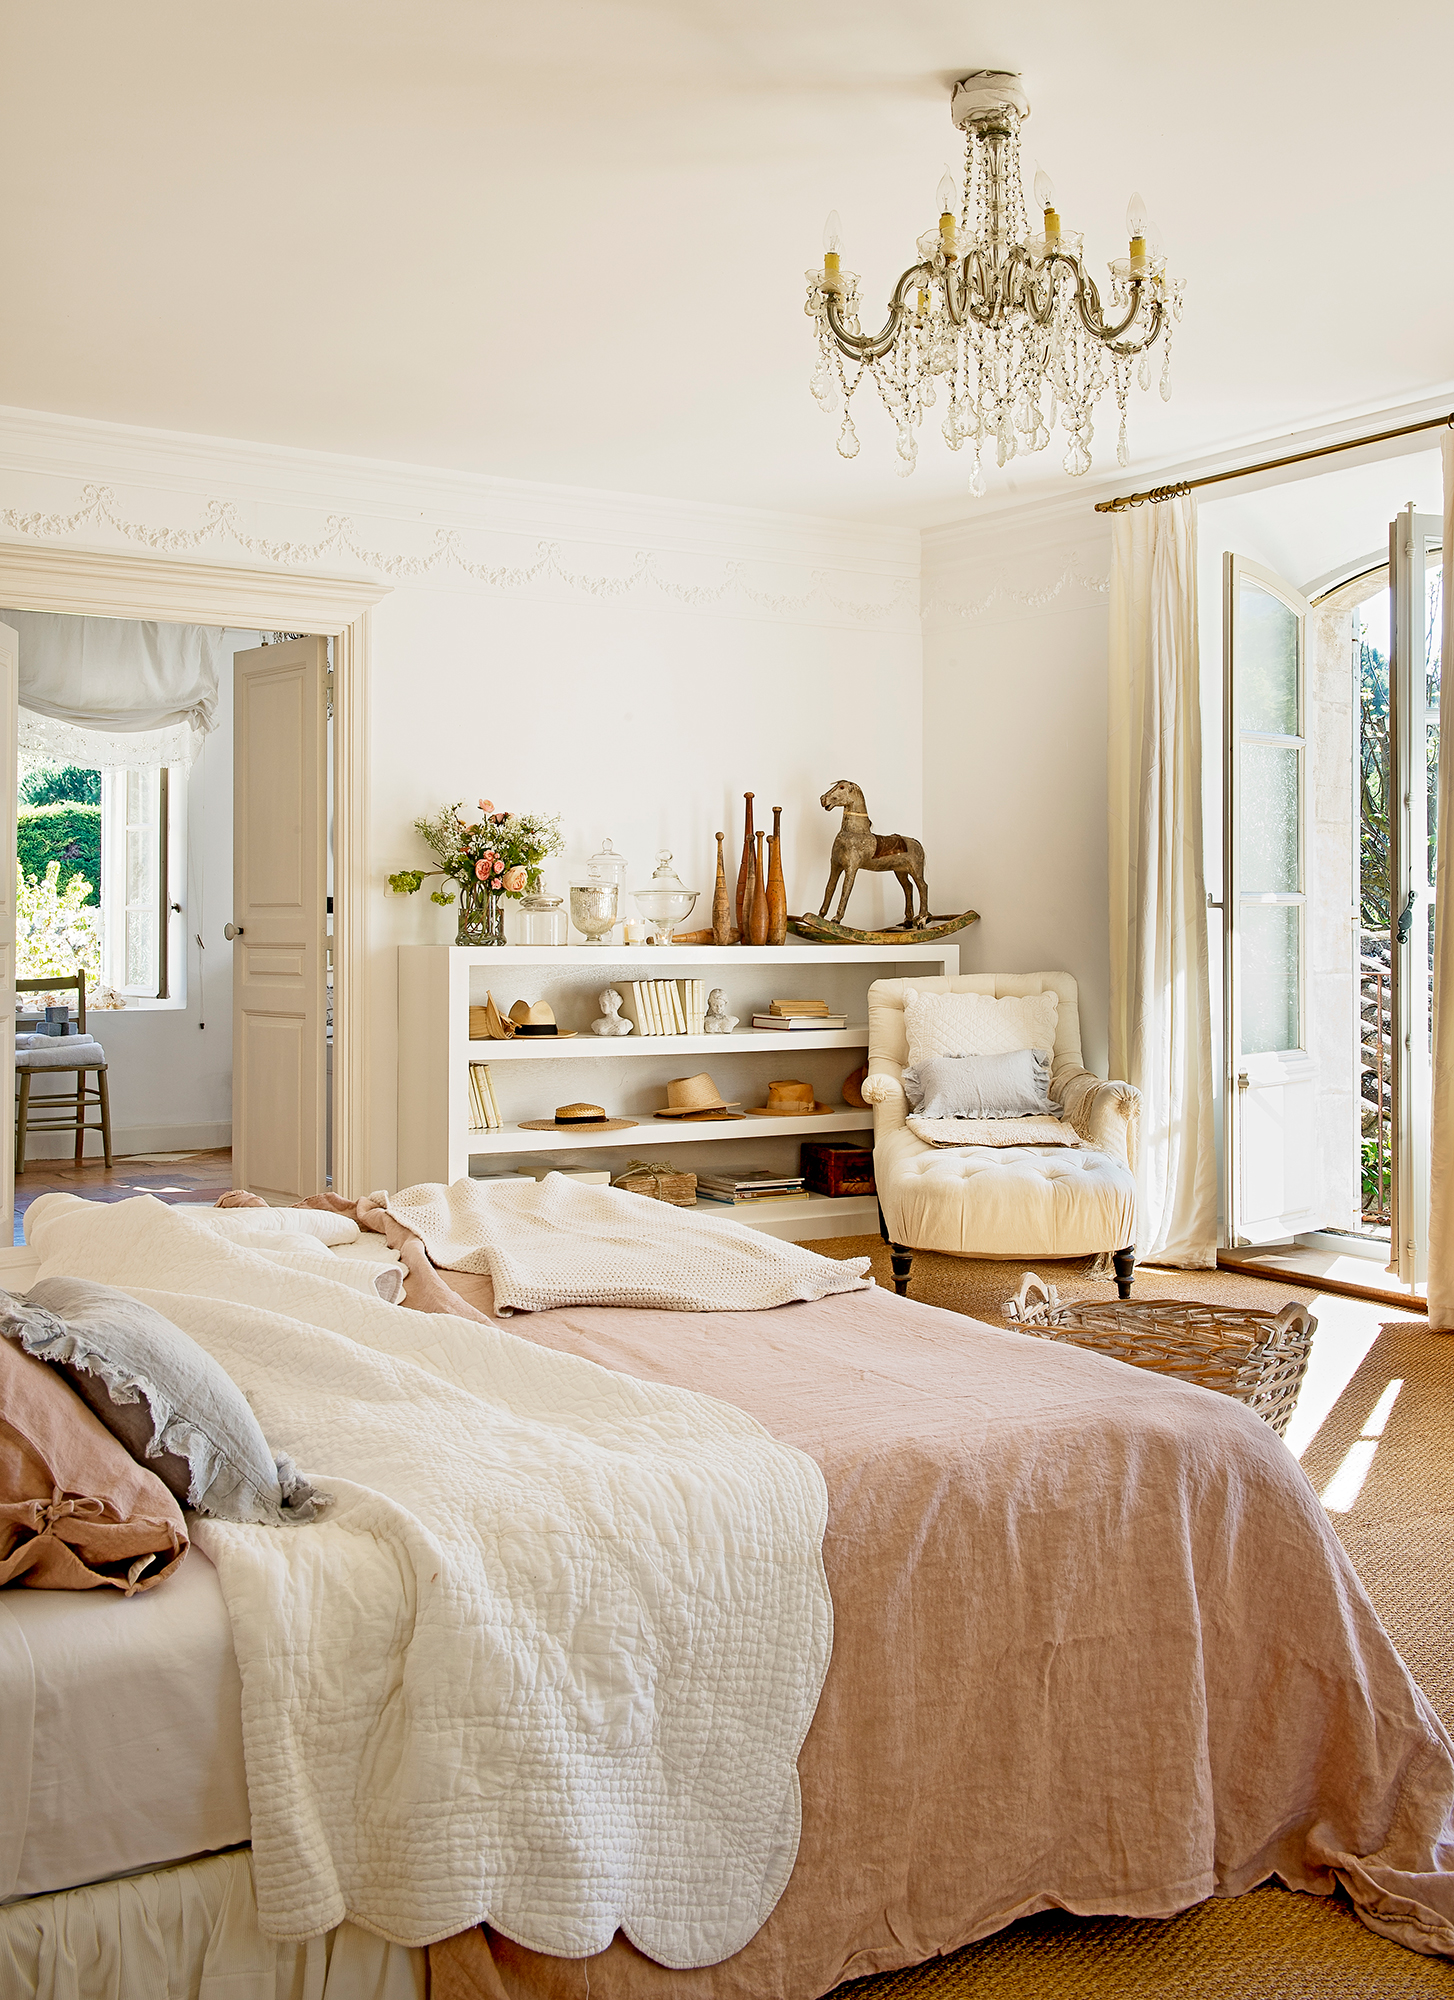 Dormitorio de estilo provenzal en tonos blancos y rosas